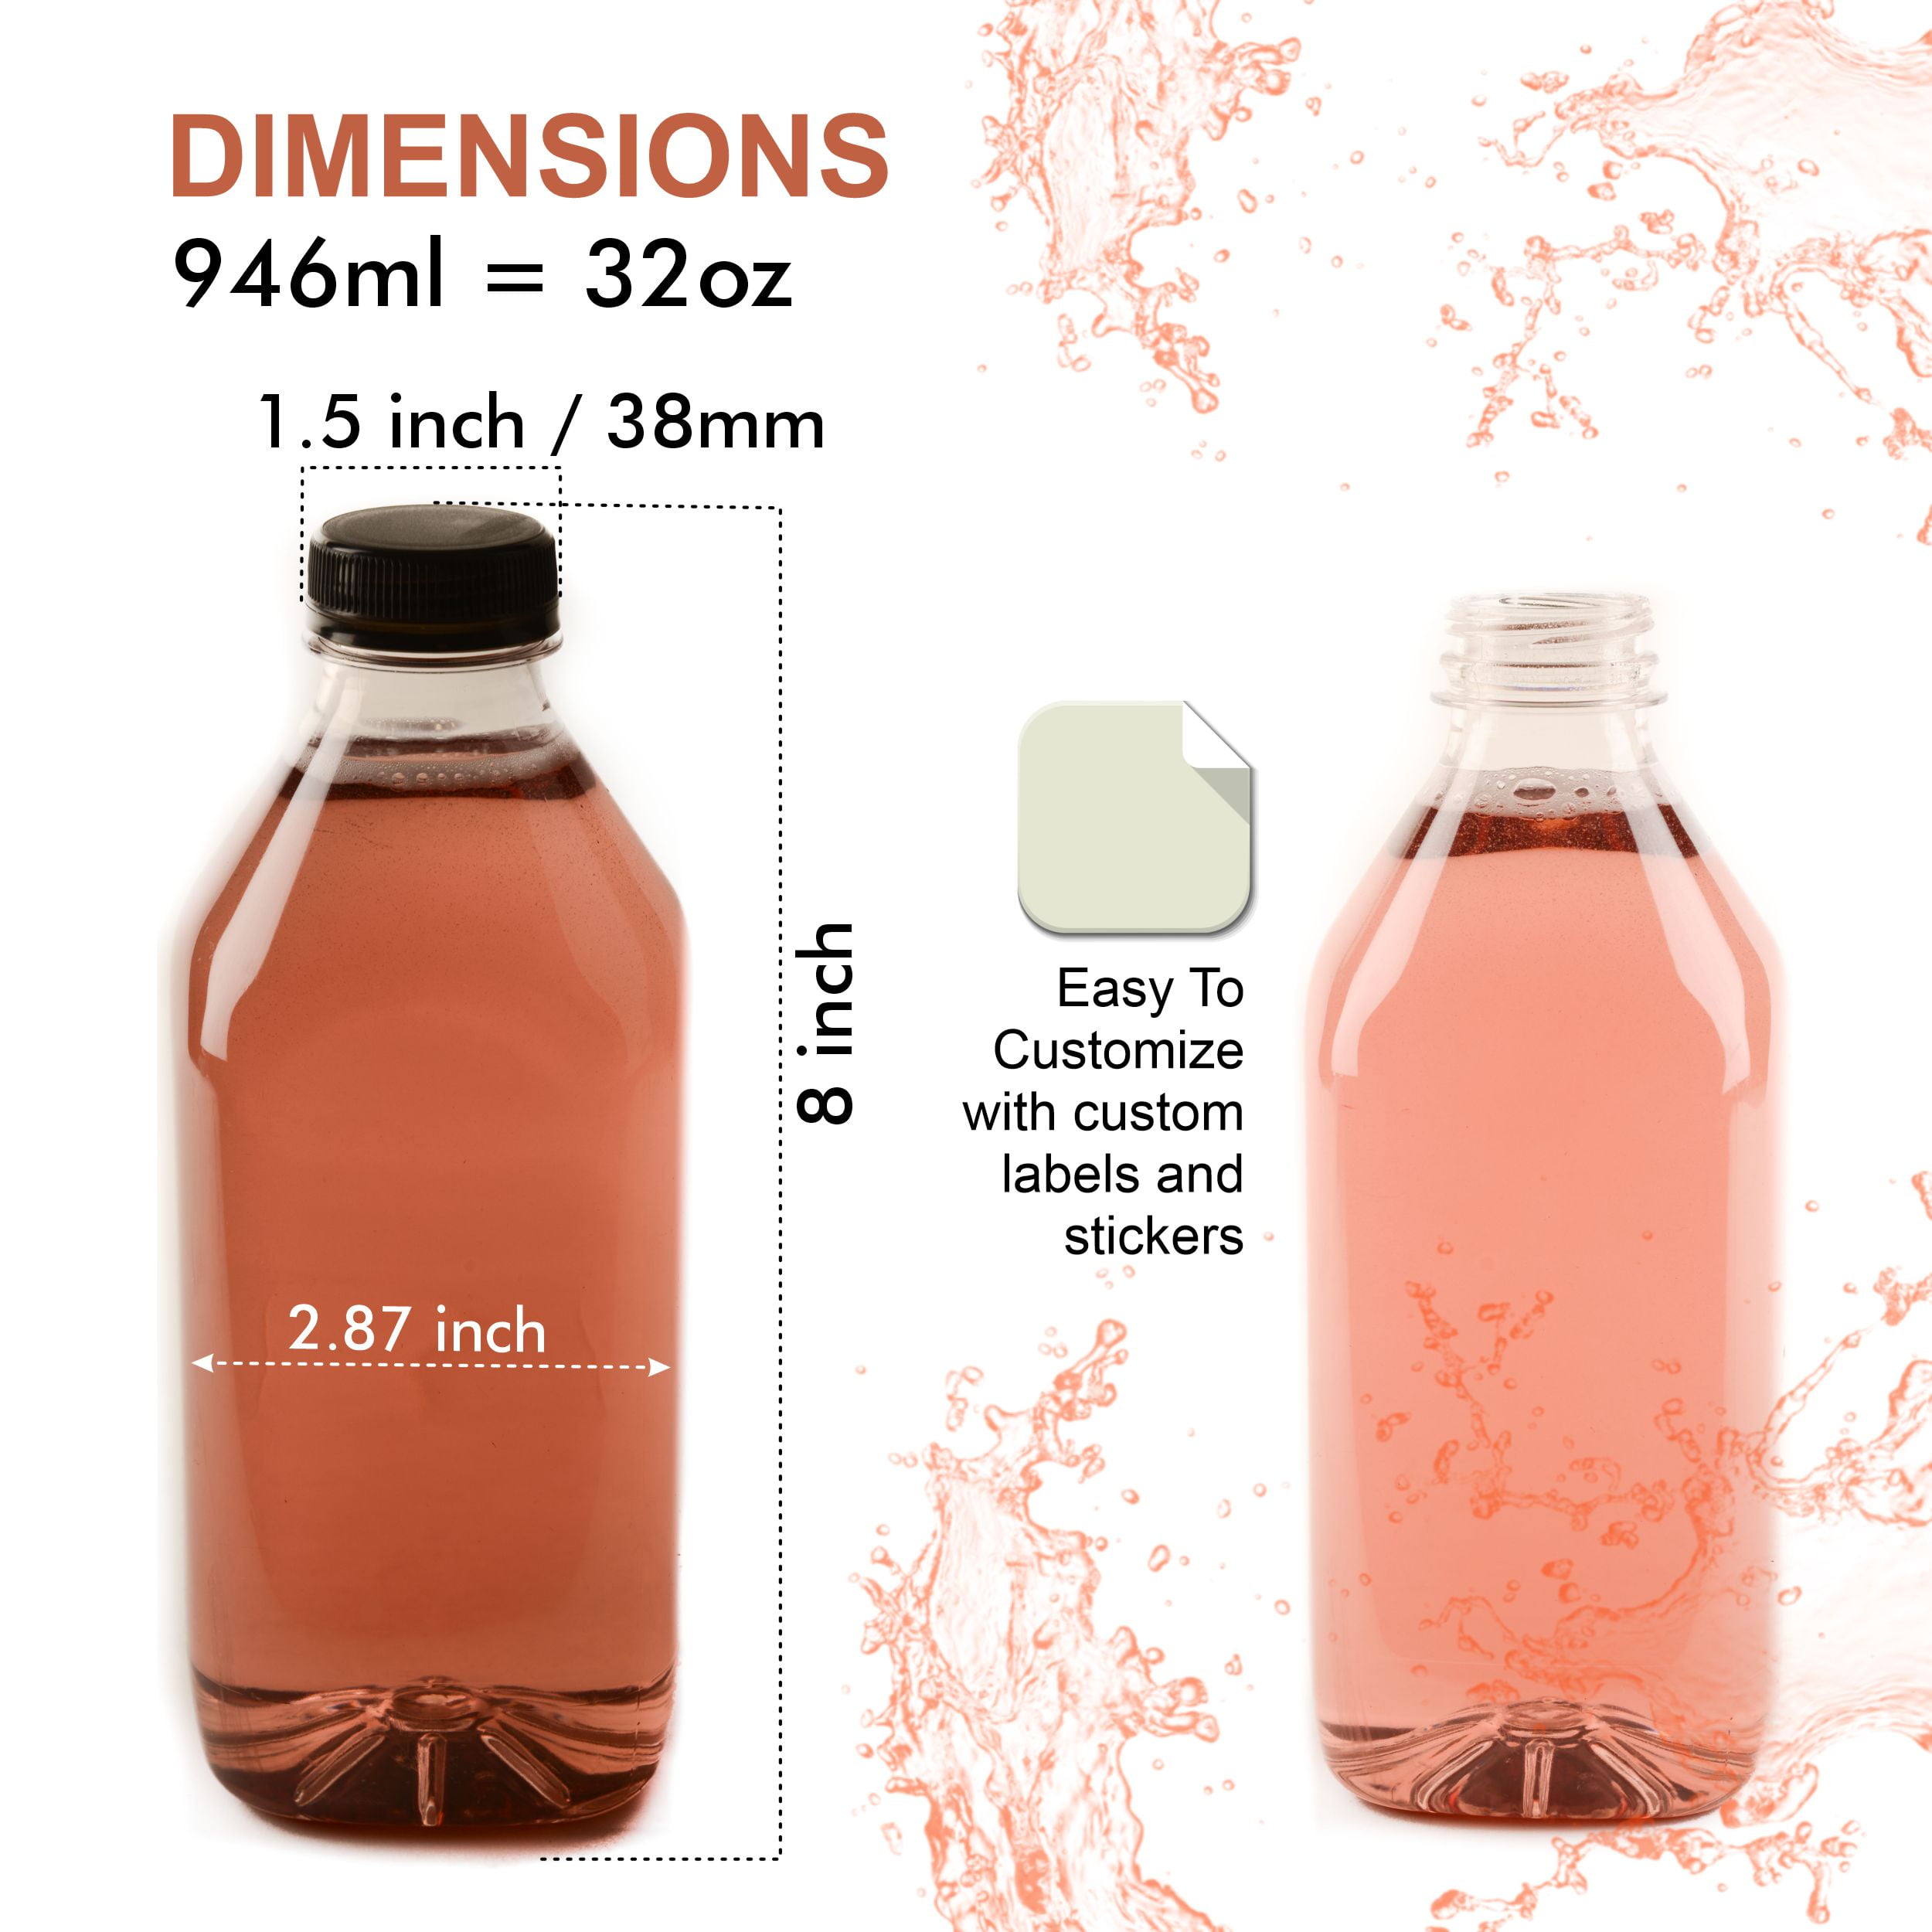 2oz Clear Pet Plastic Beverage Bottle (Natural Tamper-Evident Cap) - Clear 26.7 mm